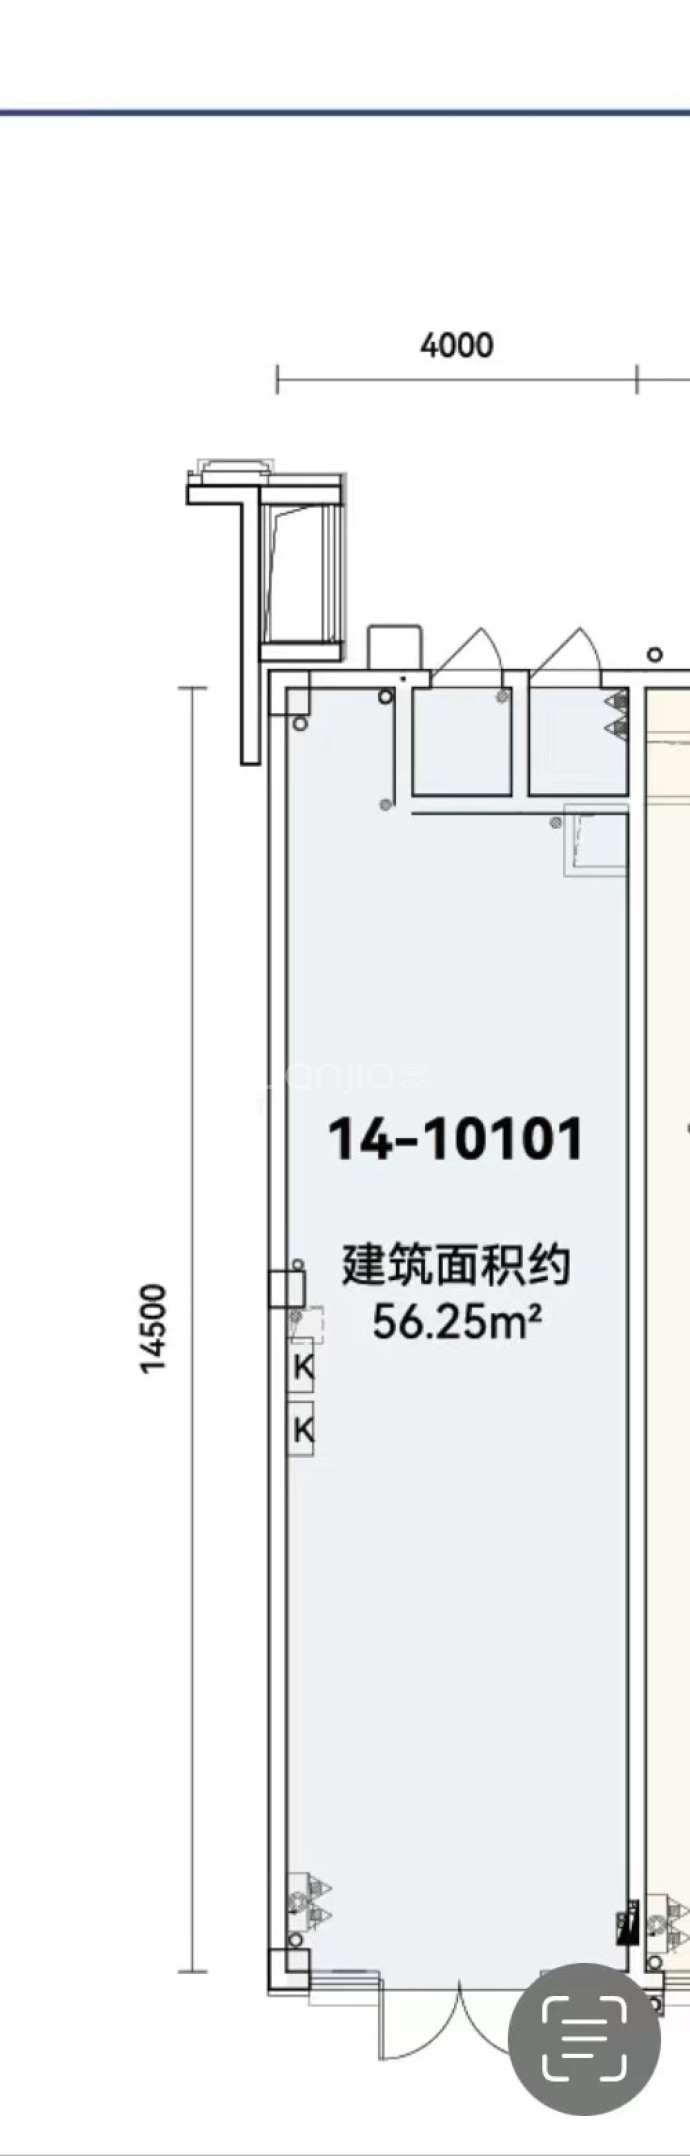 电建泷悦长安--建面 56.25m²